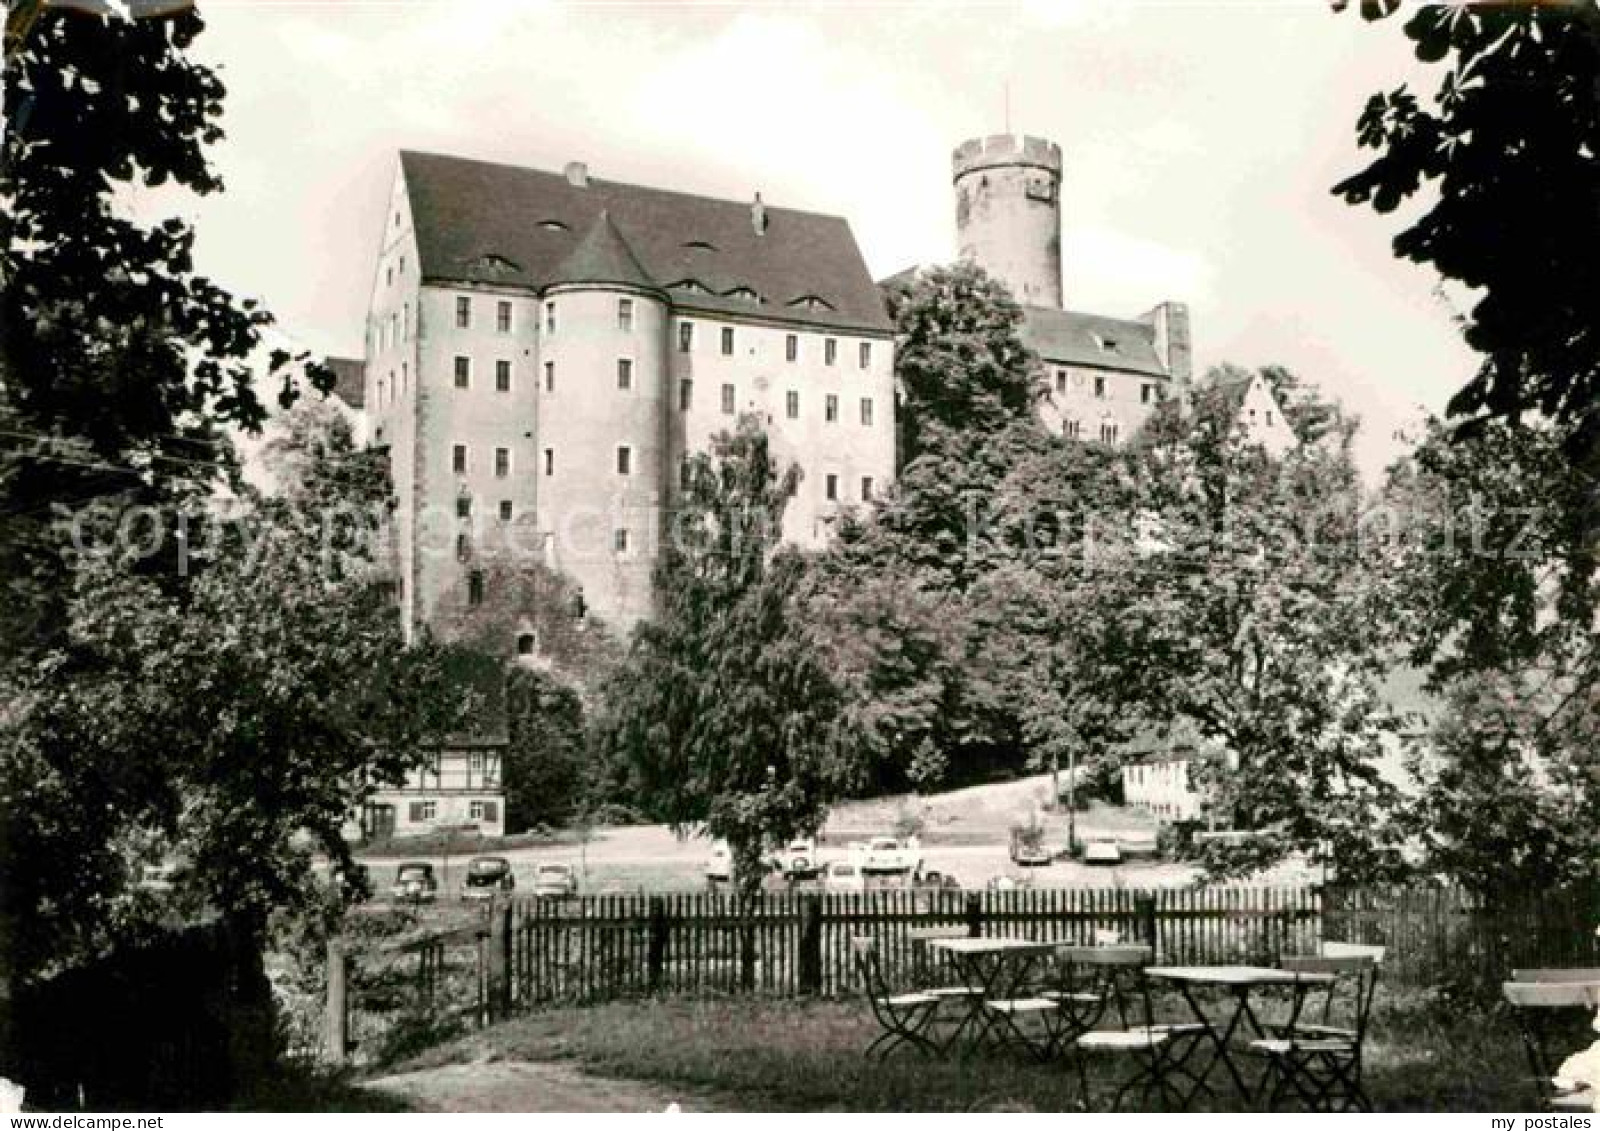 72703523 Gnandstein Burg Gnandstein - Kohren-Sahlis